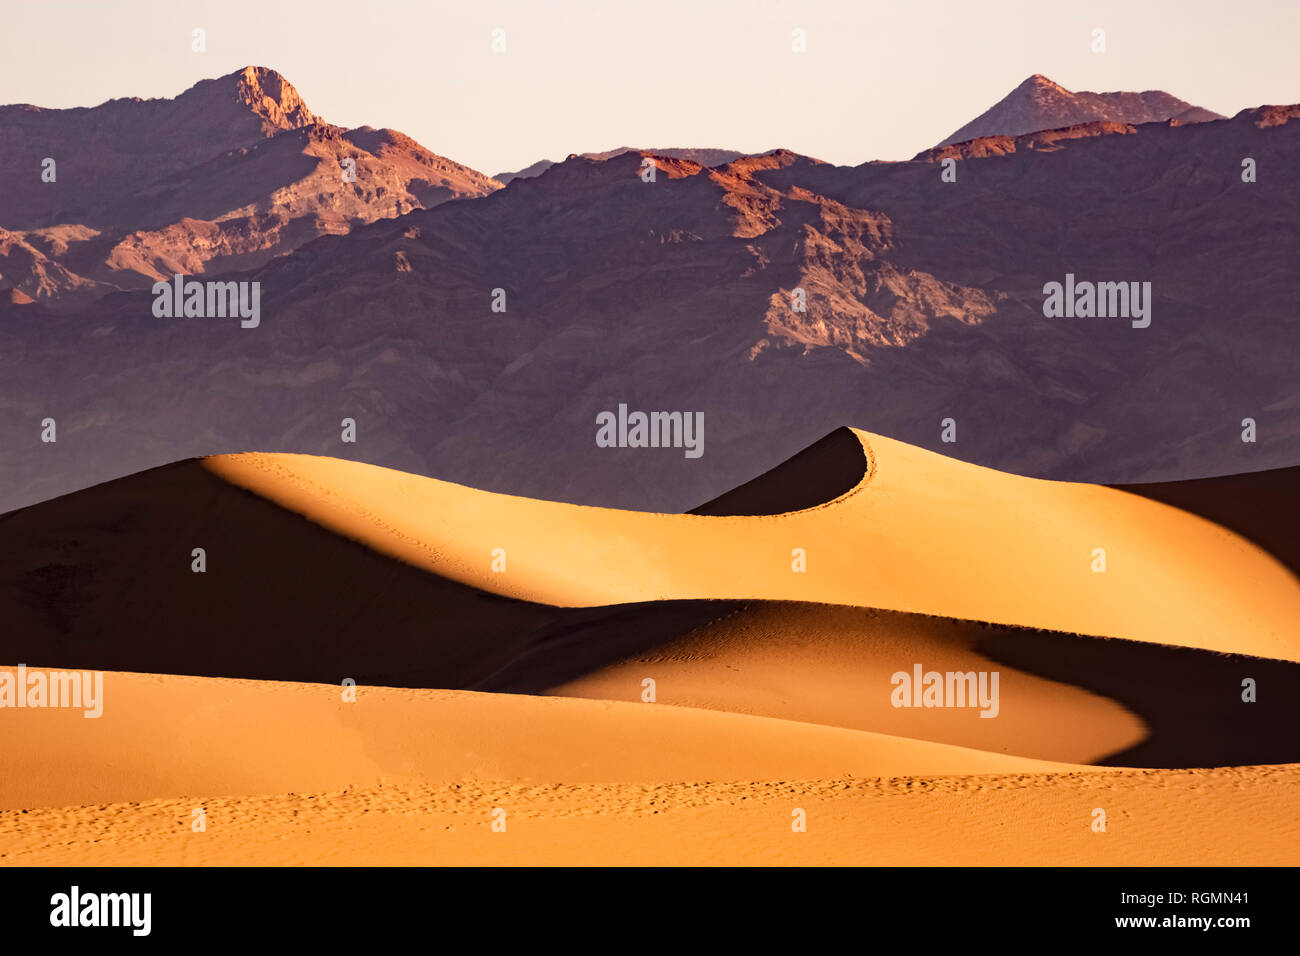 USA, californien, la vallée de la mort, Death Valley National Park, Mesquite Flat Sand Dunes Banque D'Images